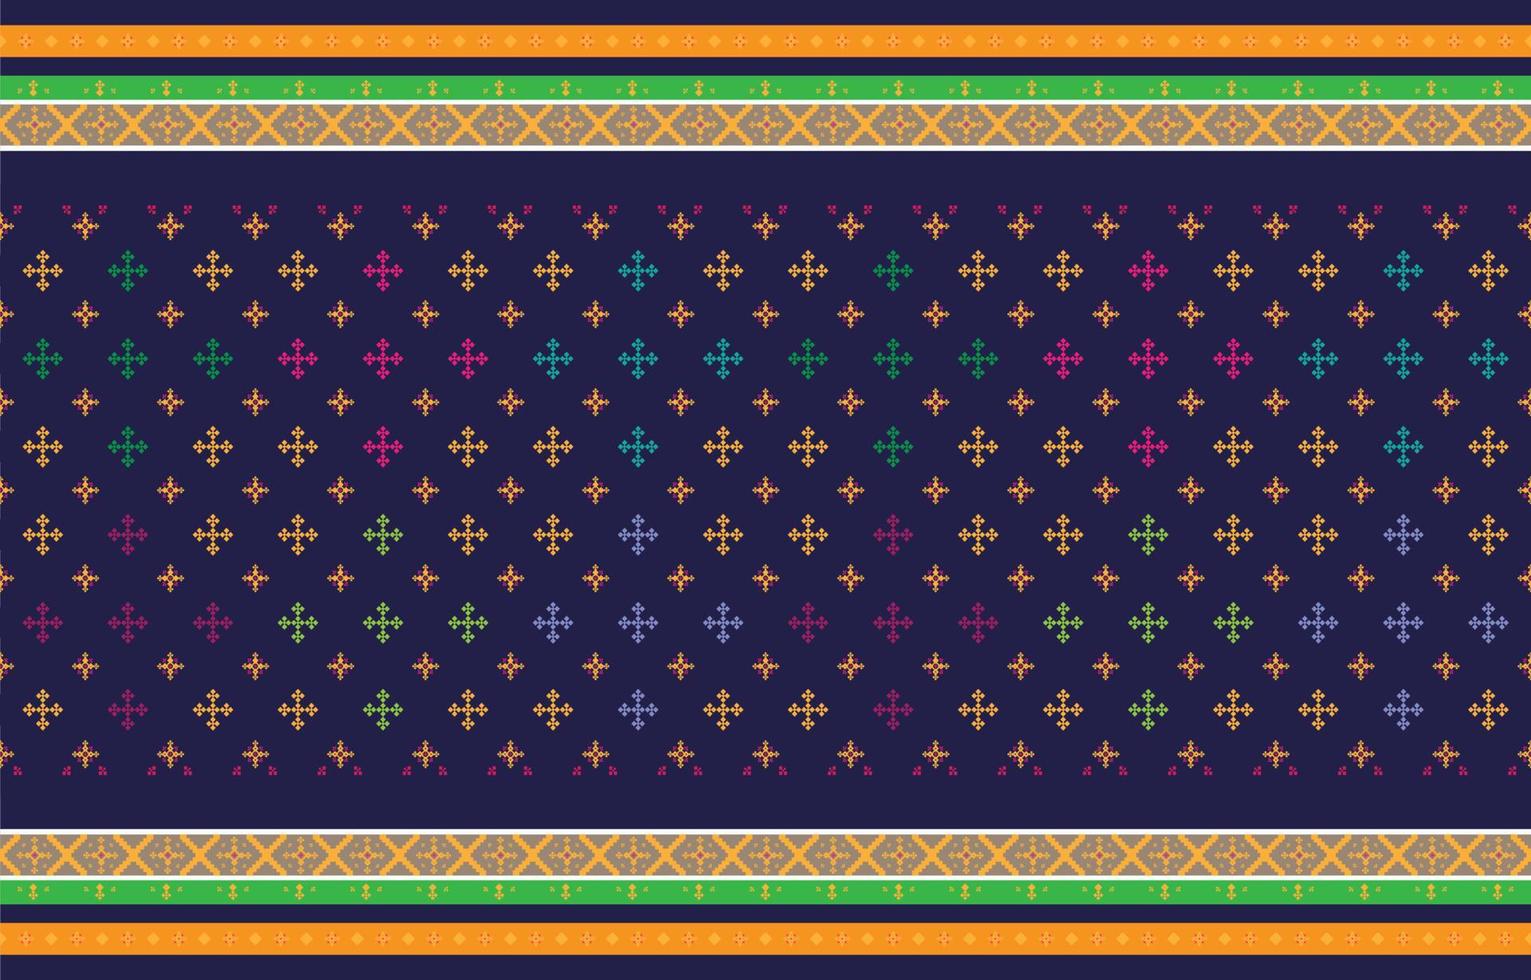 abstracte geometrische en tribale patronen, gebruiksontwerp lokale stoffenpatronen en ontwerp geïnspireerd door inheemse stammen. geometrische vectorillustratie vector